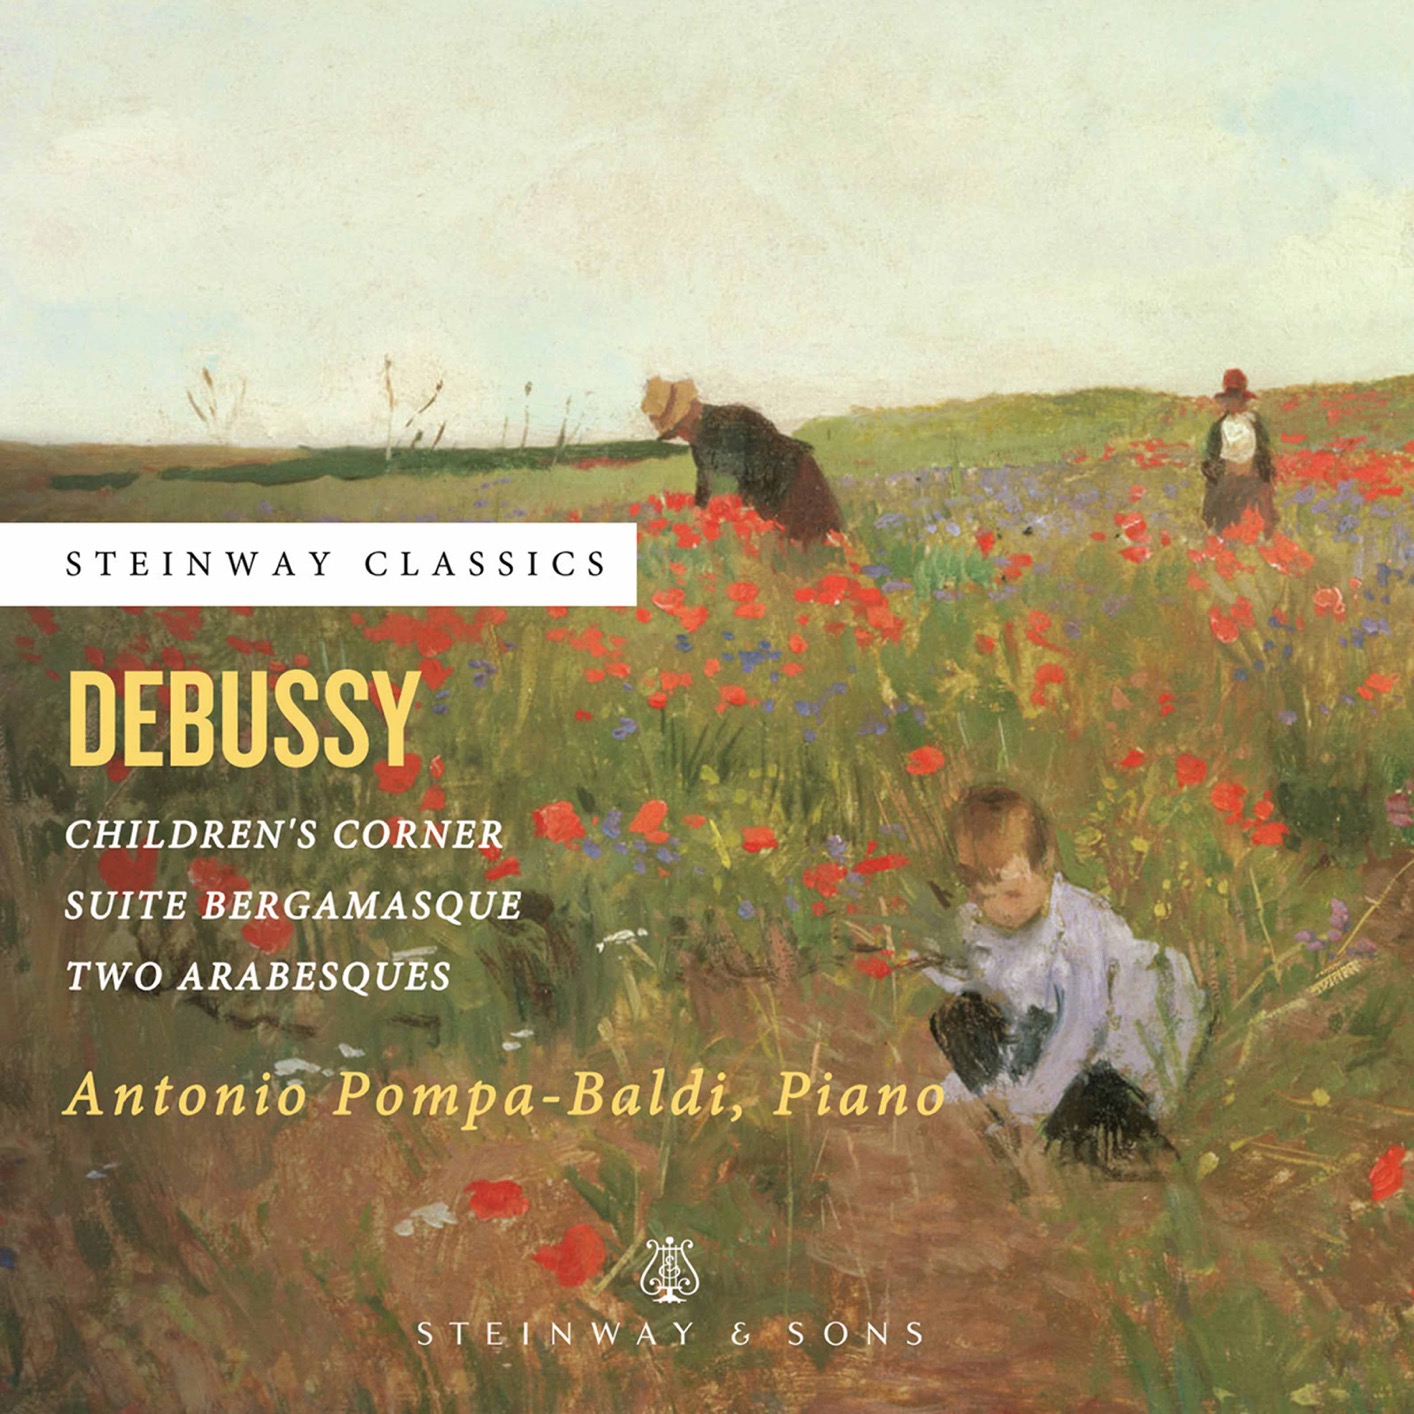 Antonio Pompa-Baldi – Debussy  Piano Works (2020) [FLAC 24bit/96kHz]